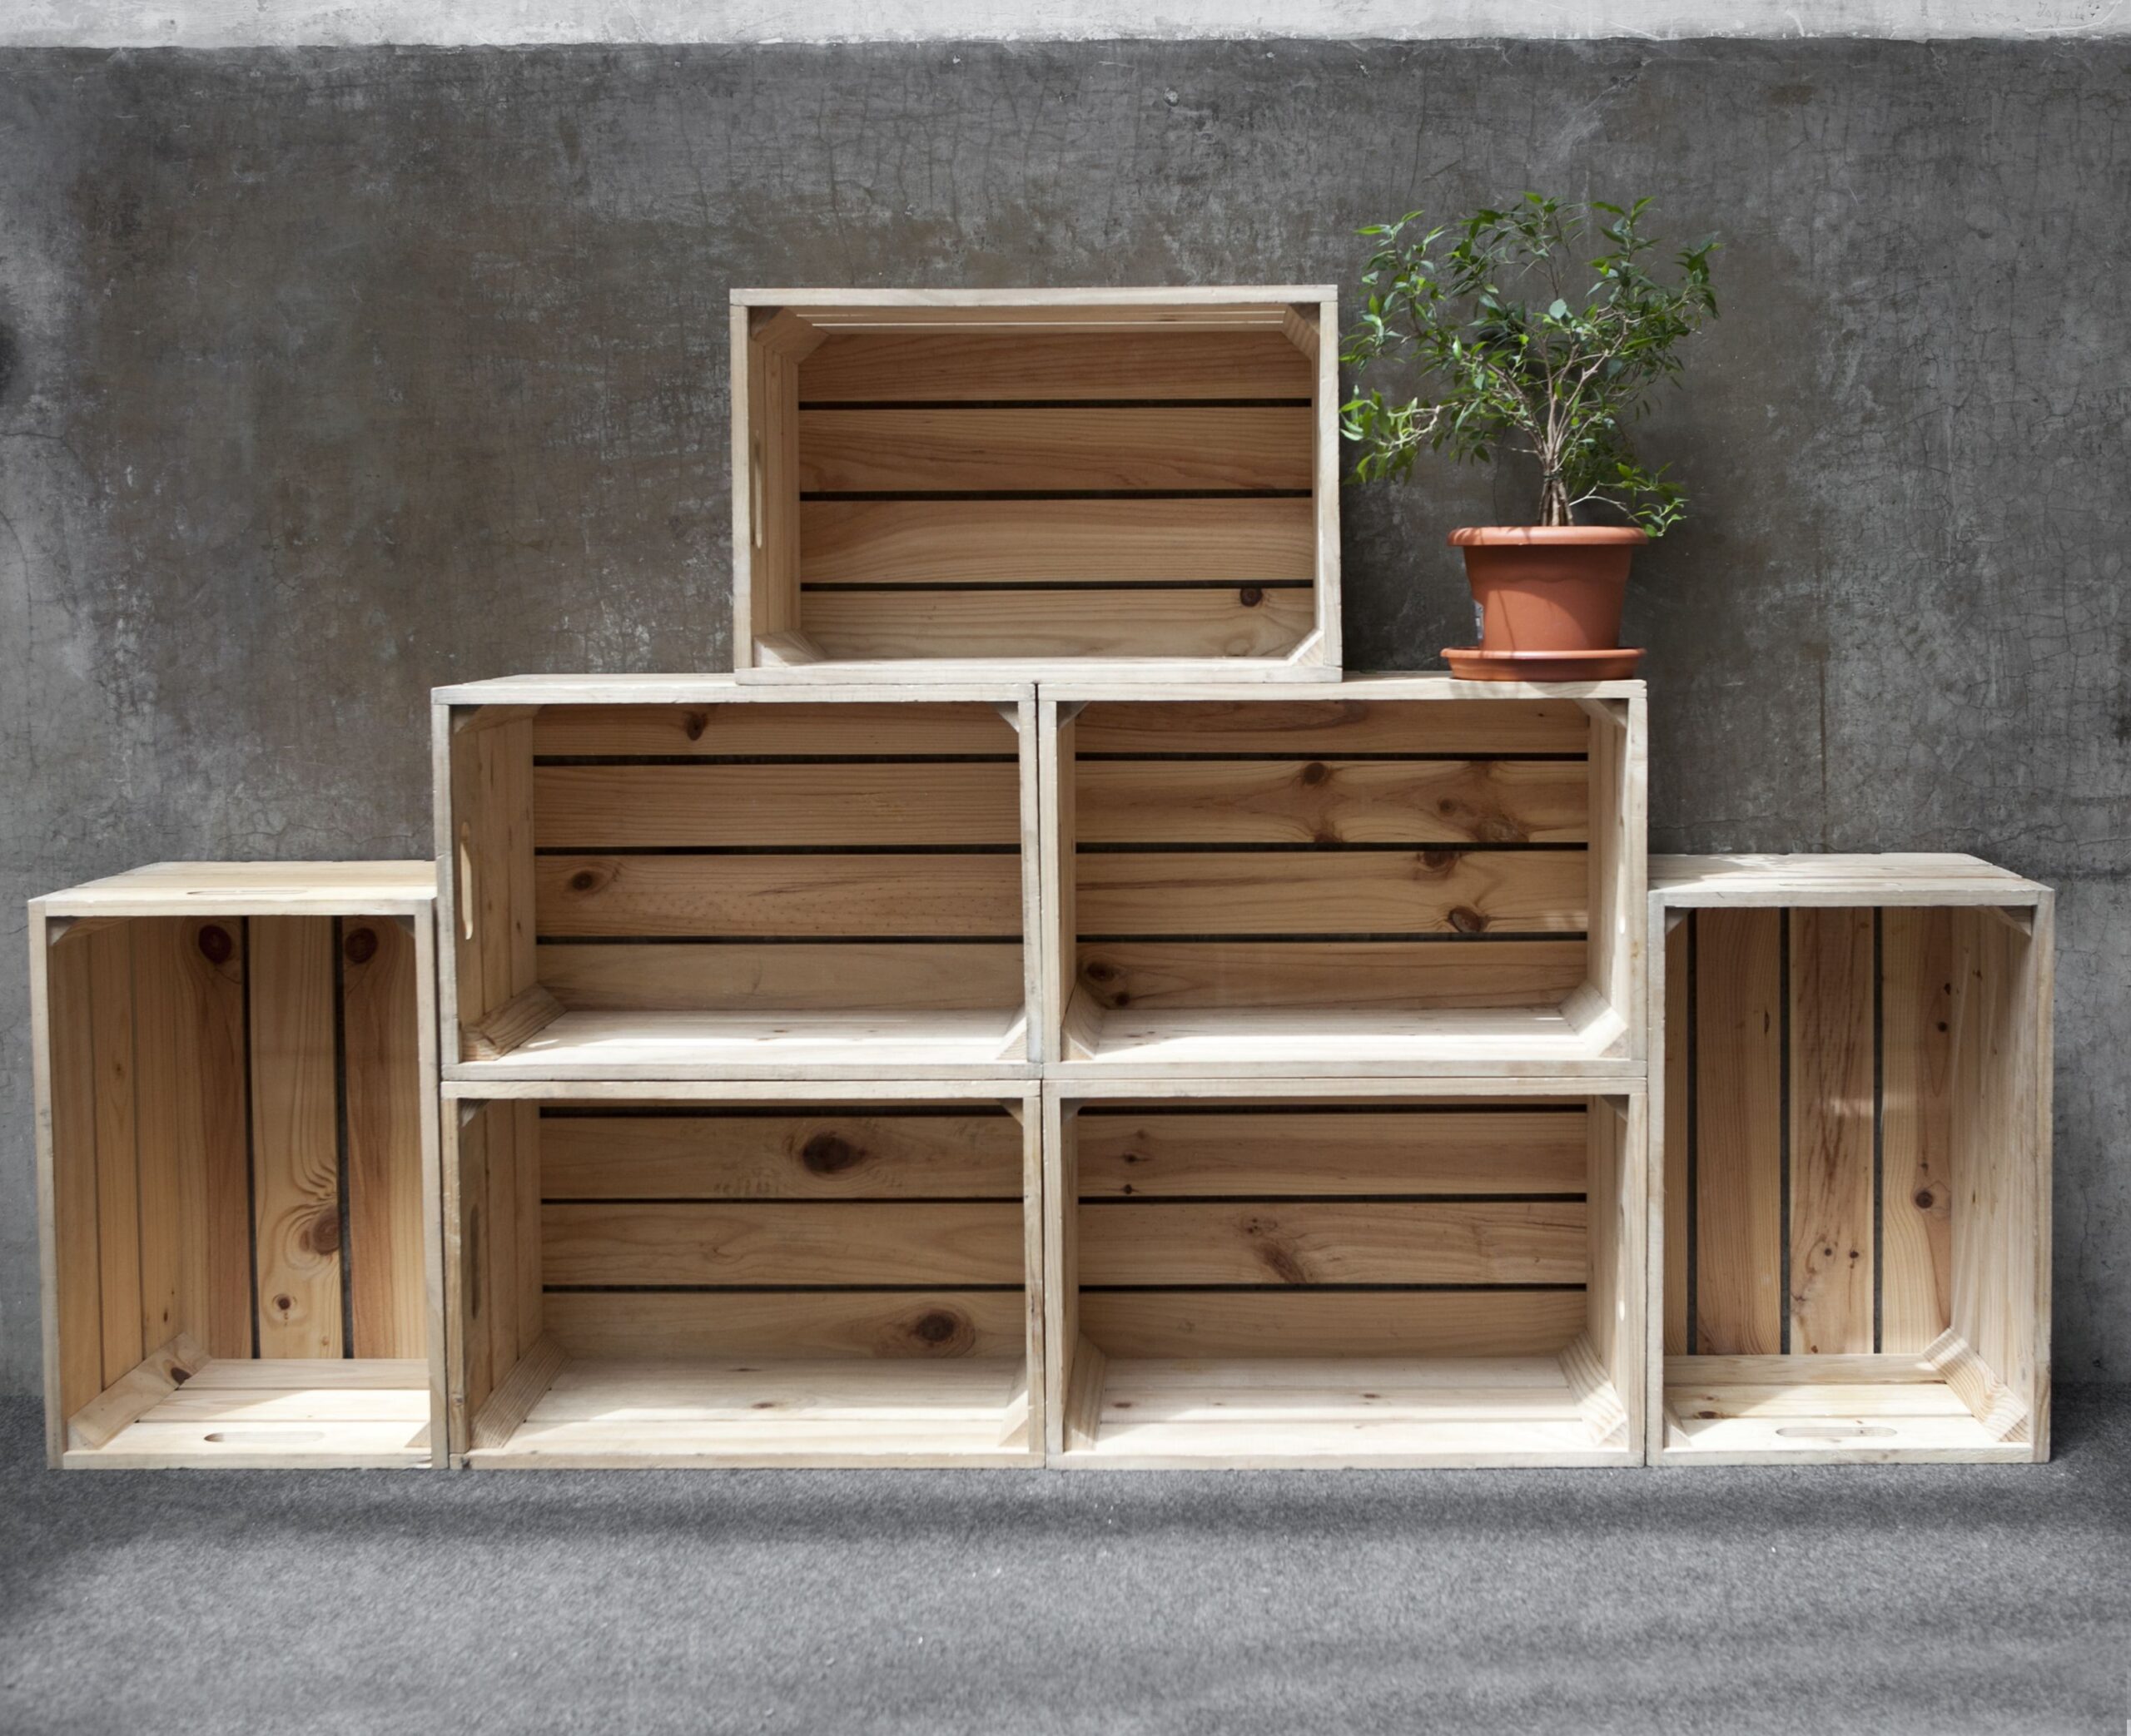 ¿Cómo crear muebles únicos y económicos con cajas? - Guía de decoración con cajas